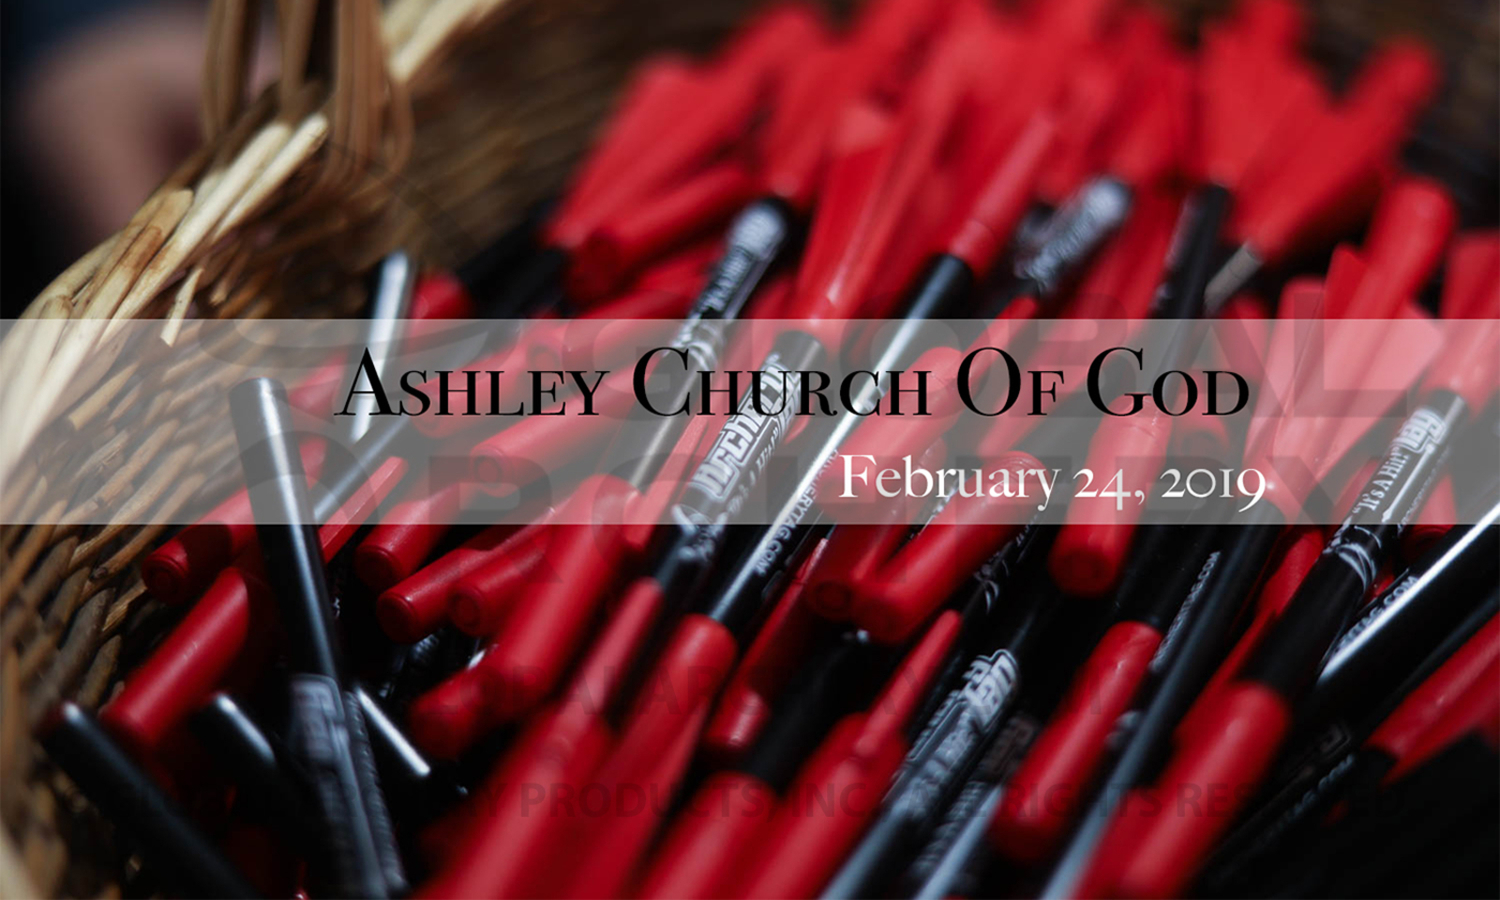 Ashley Church of God